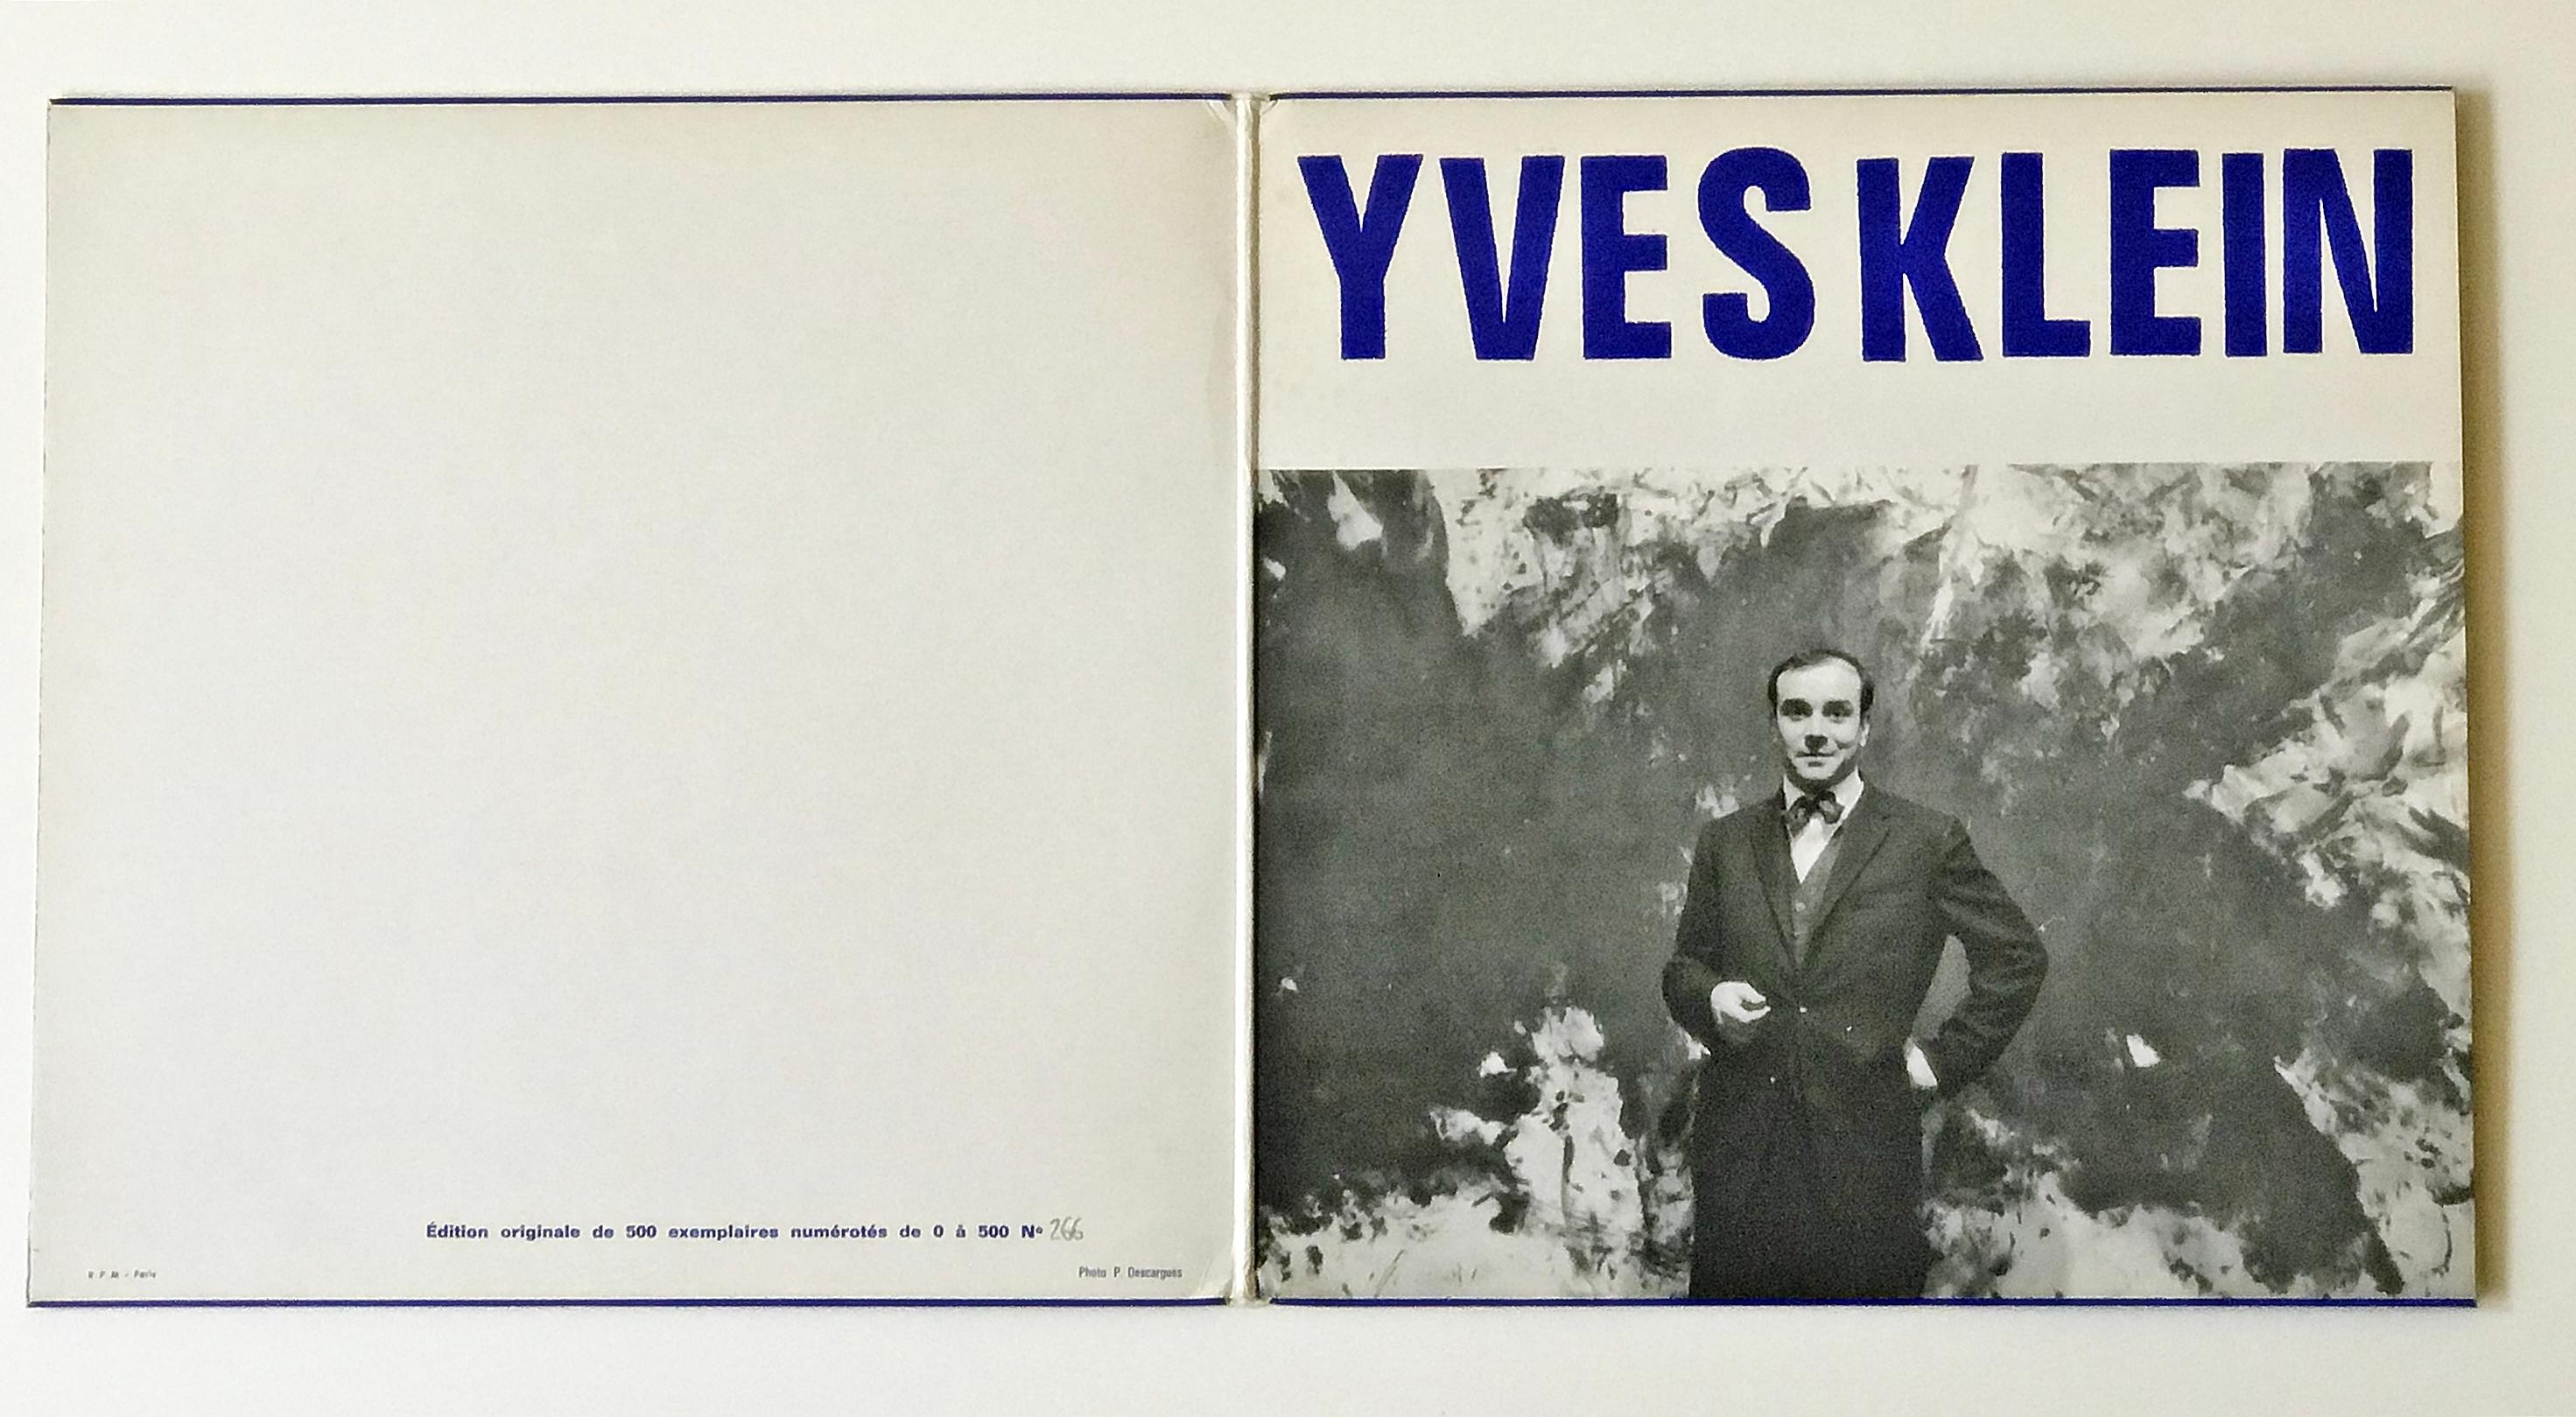 Yves Klein
La Conférence à la Sorbonne, 3 Juin, 1959, 1959-1963
Deux disques vinyles de 12 pouces contenus dans une pochette gatefold avec jaquette sérigraphiée en couleur bleu Klein international IKB.
12 7/10 × 12 7/10 pouces
Edition de 500